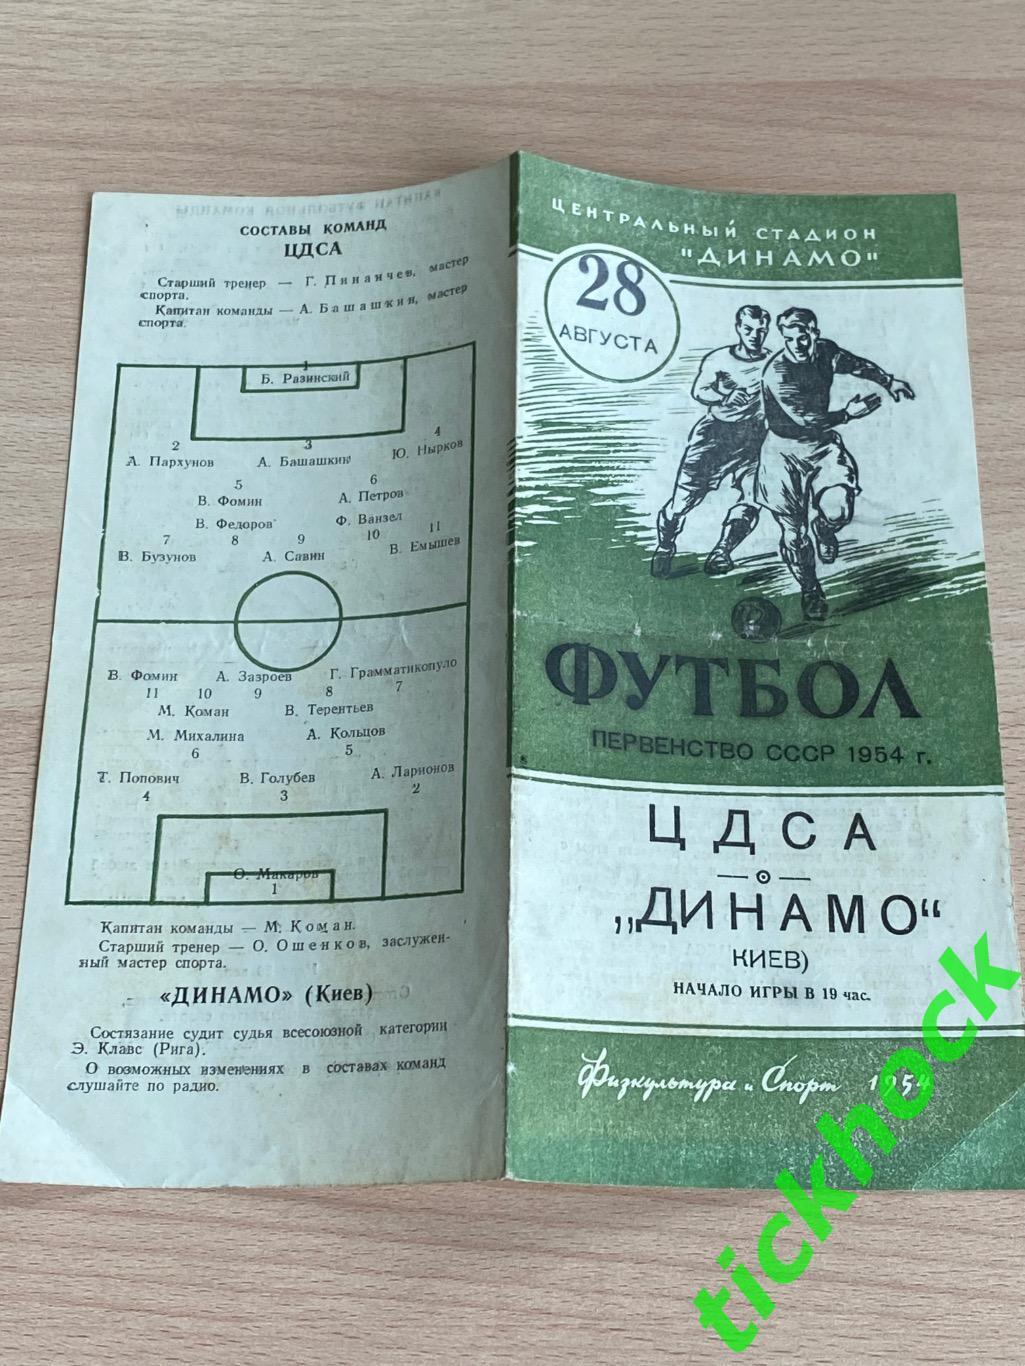 ЦДСА ( ЦСКА ) Москва - Динамо Киев 28.08.1954 -- SY